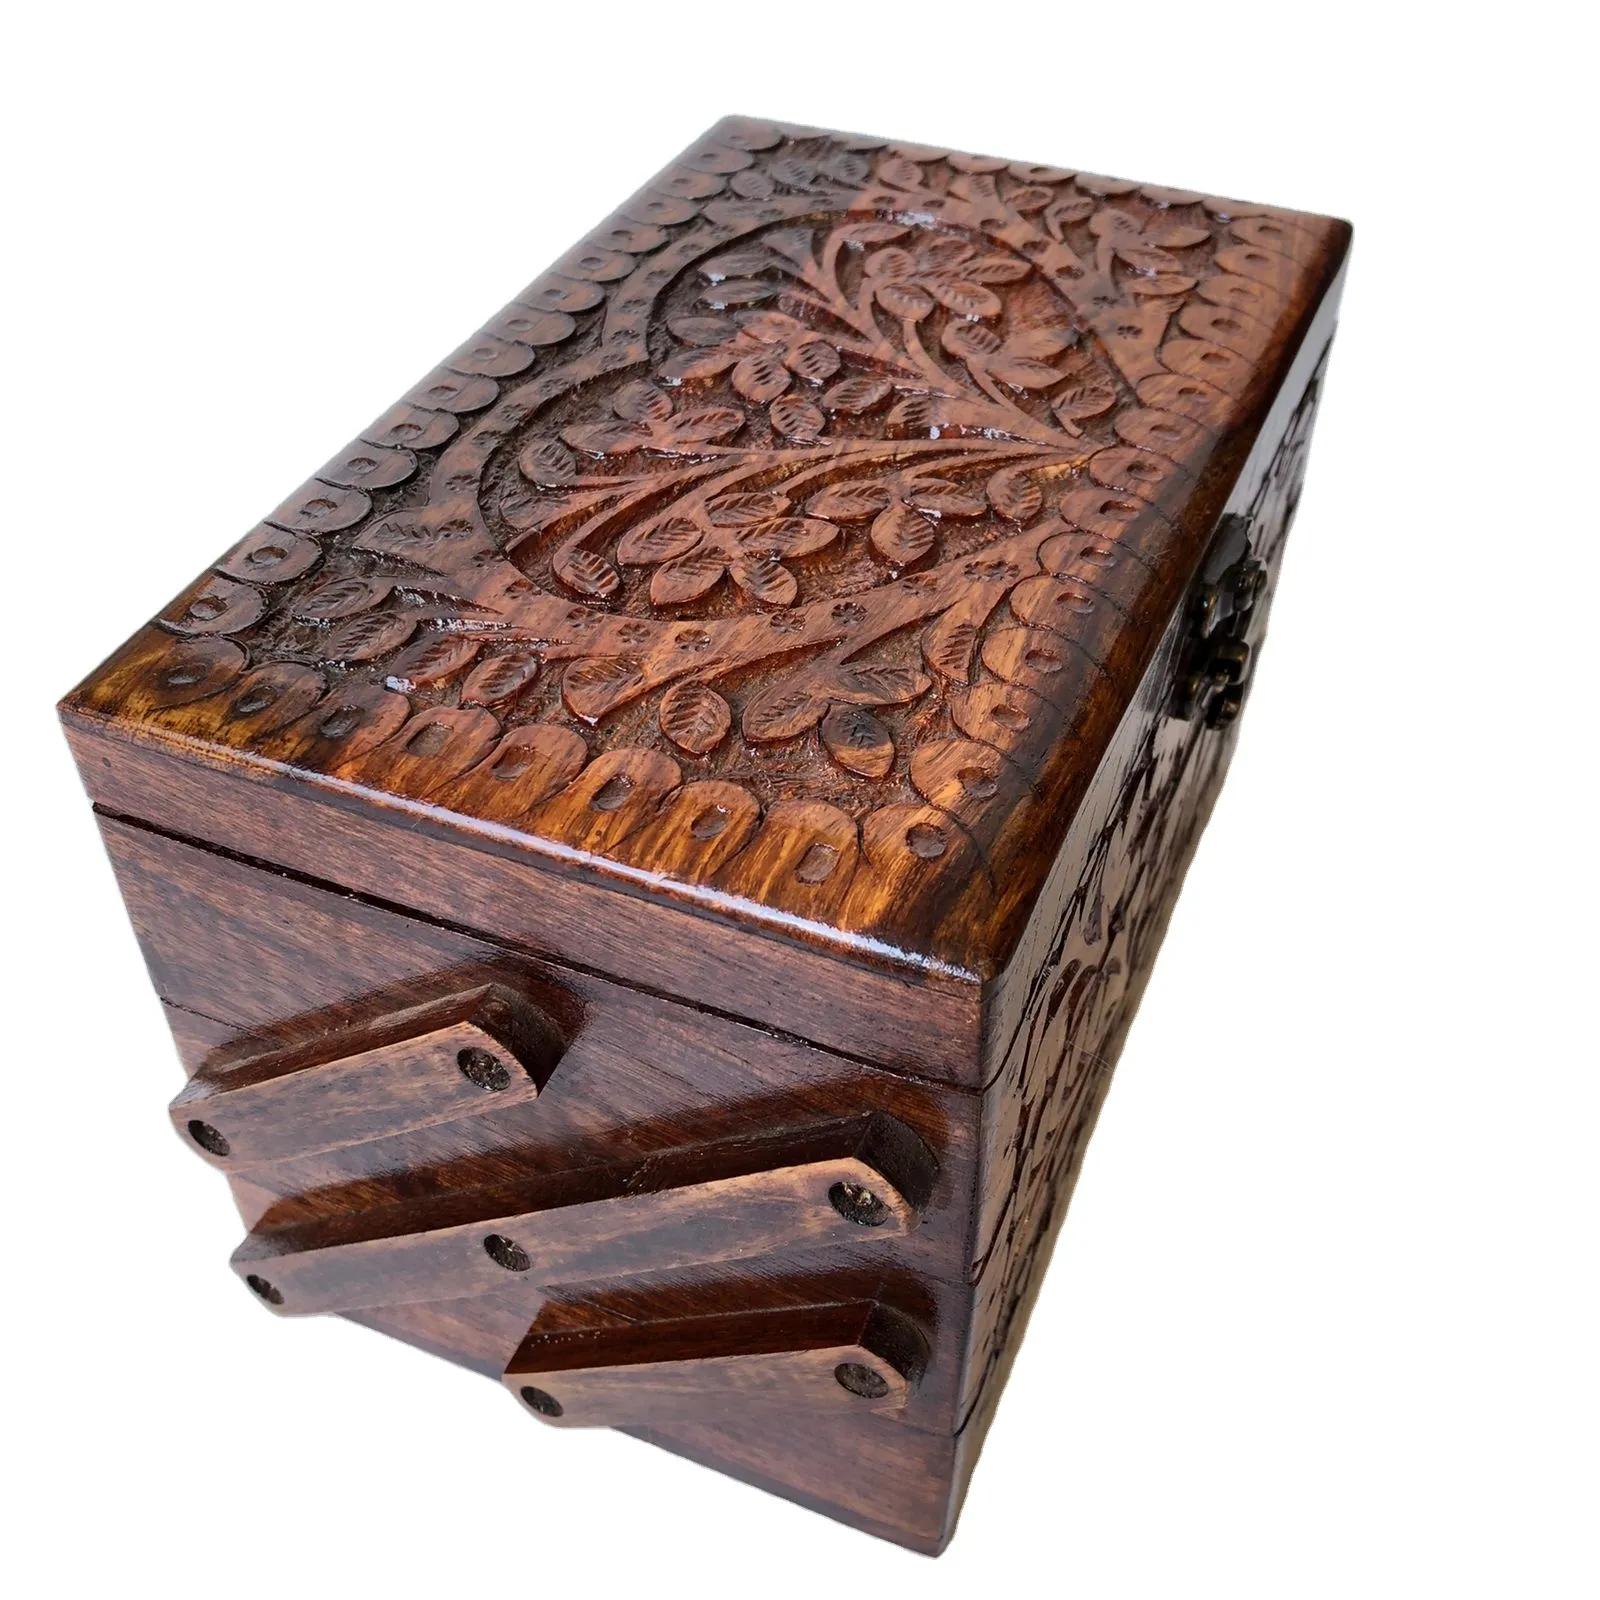 2023 nóng bán Tay Chạm Khắc Thủ công mỹ nghệ bằng gỗ chất lượng tốt nhất bằng gỗ hộp đồ trang sức hàng đầu yêu cầu thủ công mỹ nghệ mới trang trí nhà mảnh